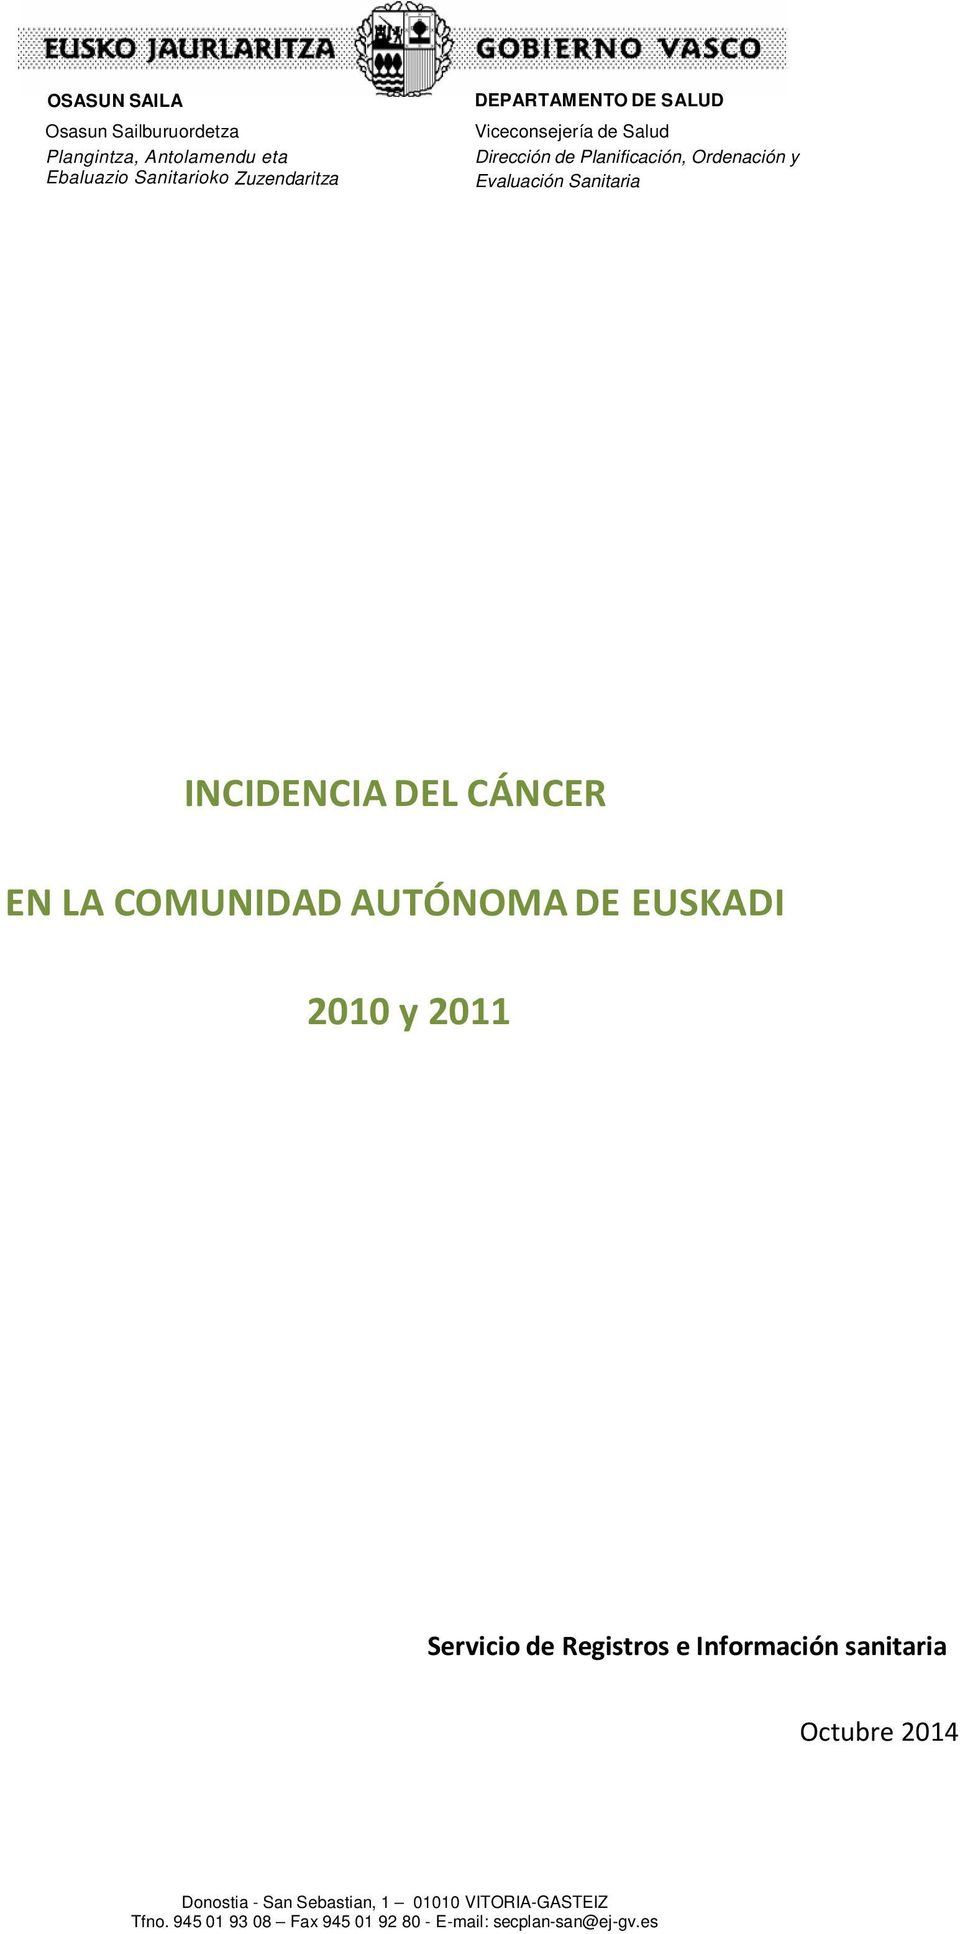 CÁNCER EN LA COMUNIDAD AUTÓNOMA DE EUSKADI 2010 y 2011 Servicio de Registros e Información sanitaria Octubre